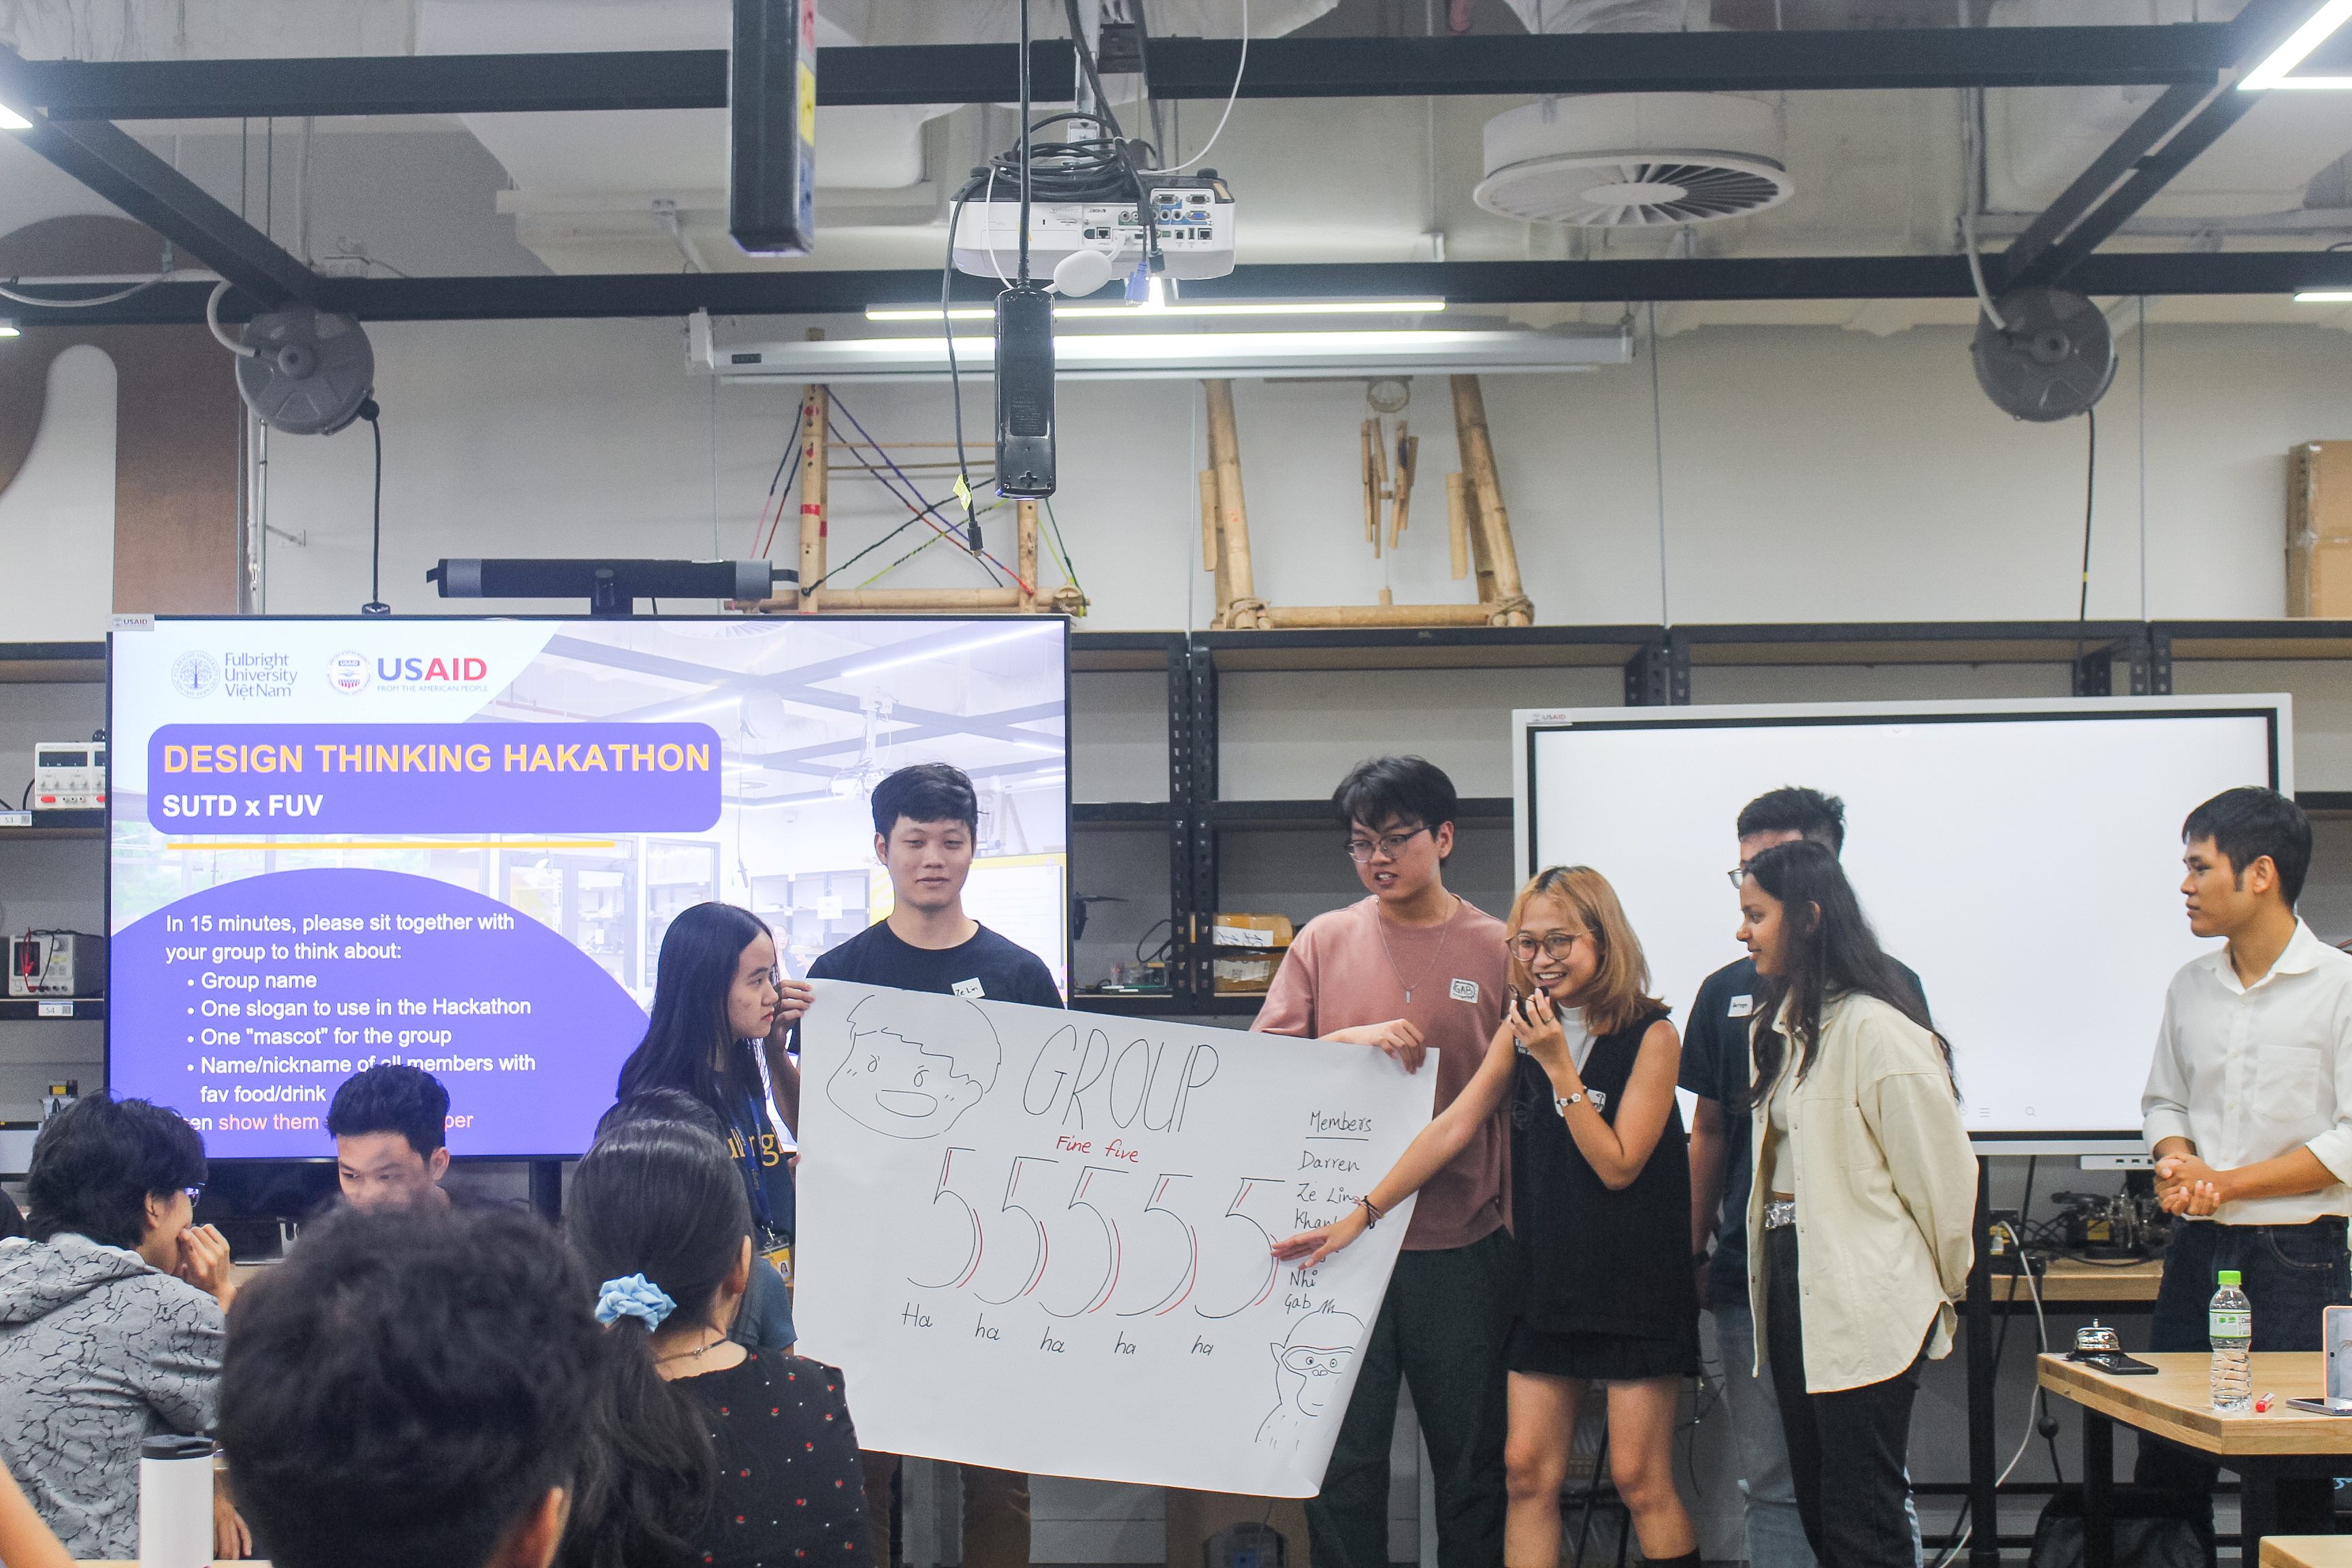 Là một sinh viên năm cuối tại Đại học Fulbright Việt Nam, Lan Khanh hiện đang theo đuổi ngành Human-centered Engineering (Kỹ thuật Vị nhân sinh).